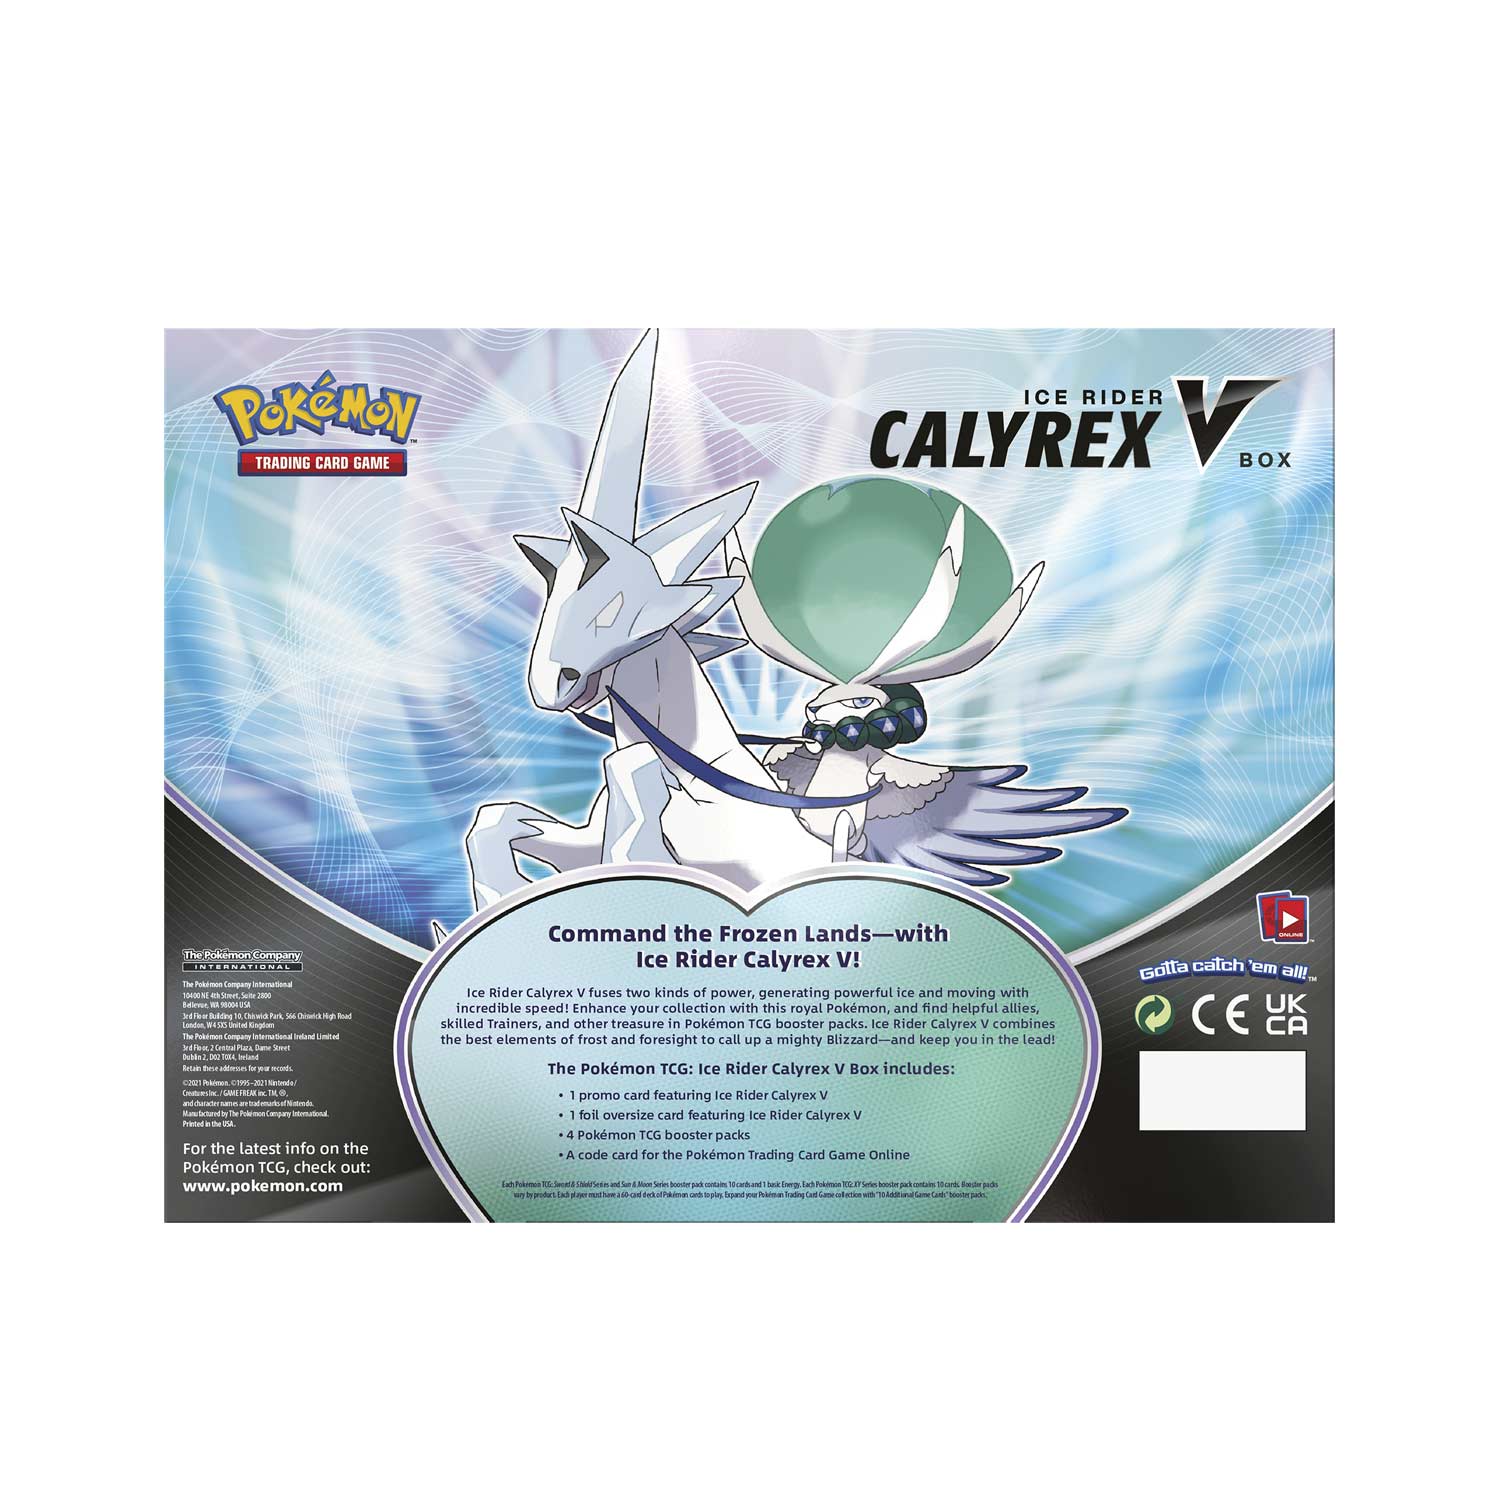 Pokemon Tcg Ice Rider Calyrex V Box Pokemon Center Uk Official Site